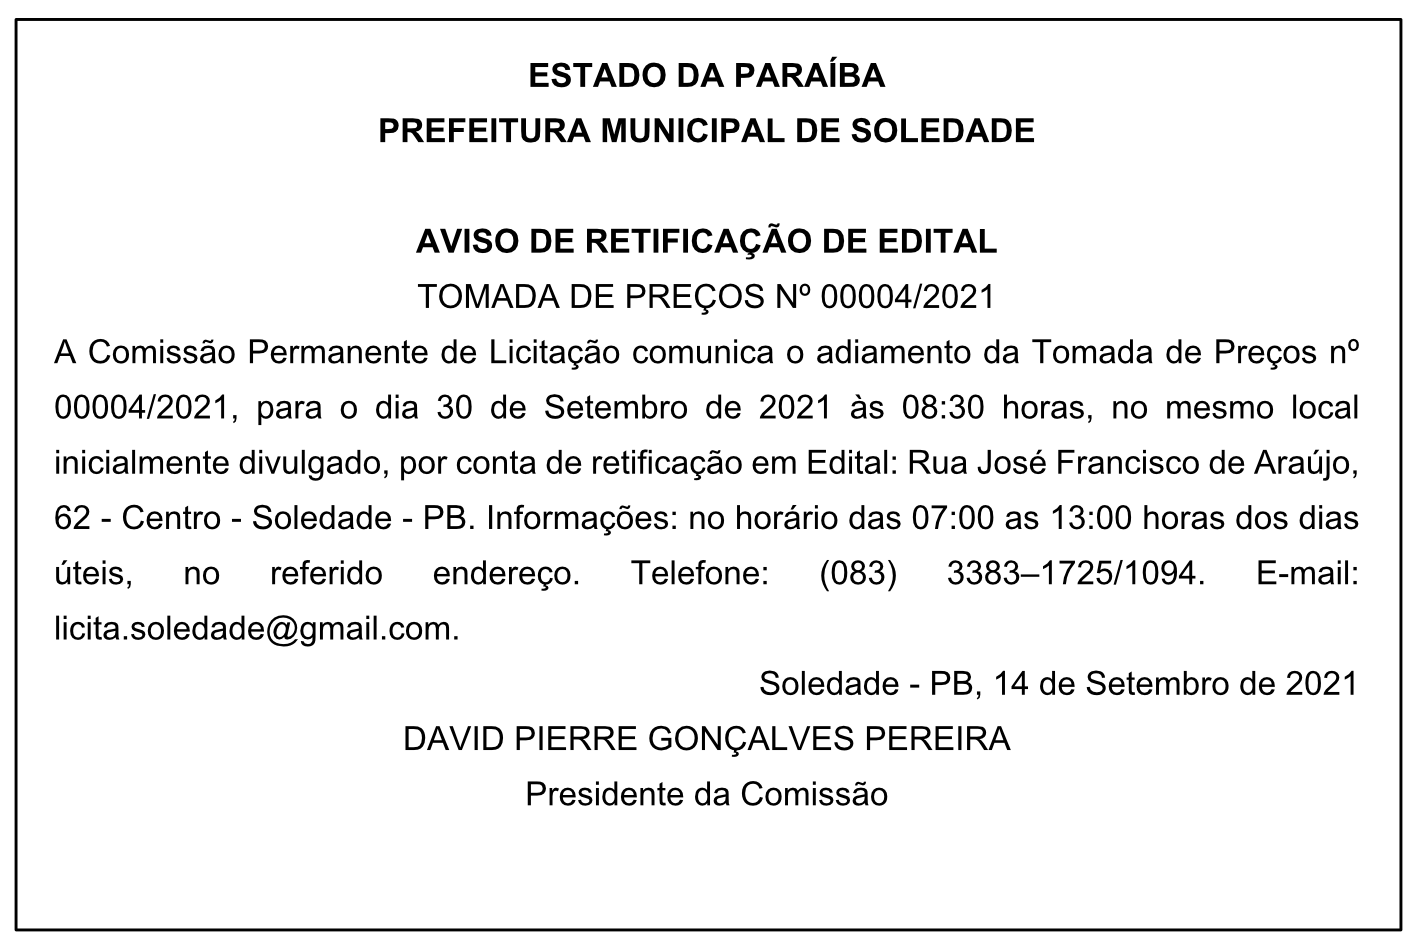 PREFEITURA MUNICIPAL DE SOLEDADE – AVISO DE RETIFICAÇÃO DE EDITAL – TOMADA DE PREÇOS Nº 00004/2021